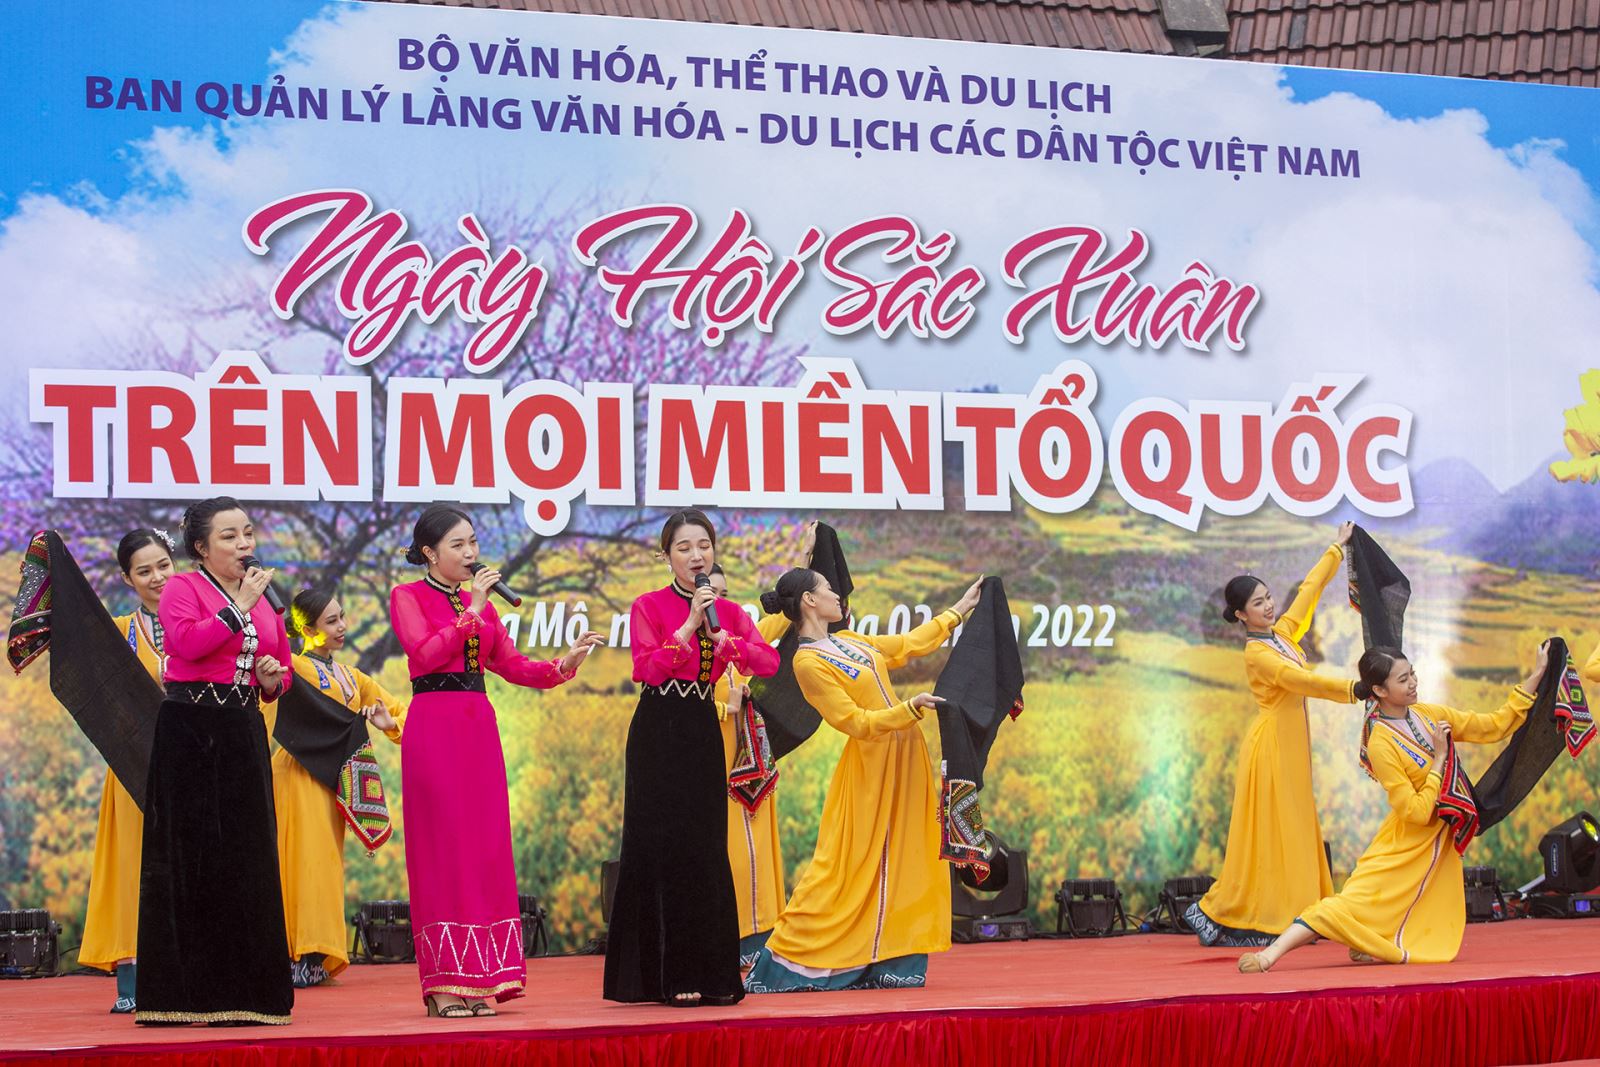 “Sắc Xuân trên mọi miền Tổ quốc” tại Làng VH-DL các dân tộc Việt Nam